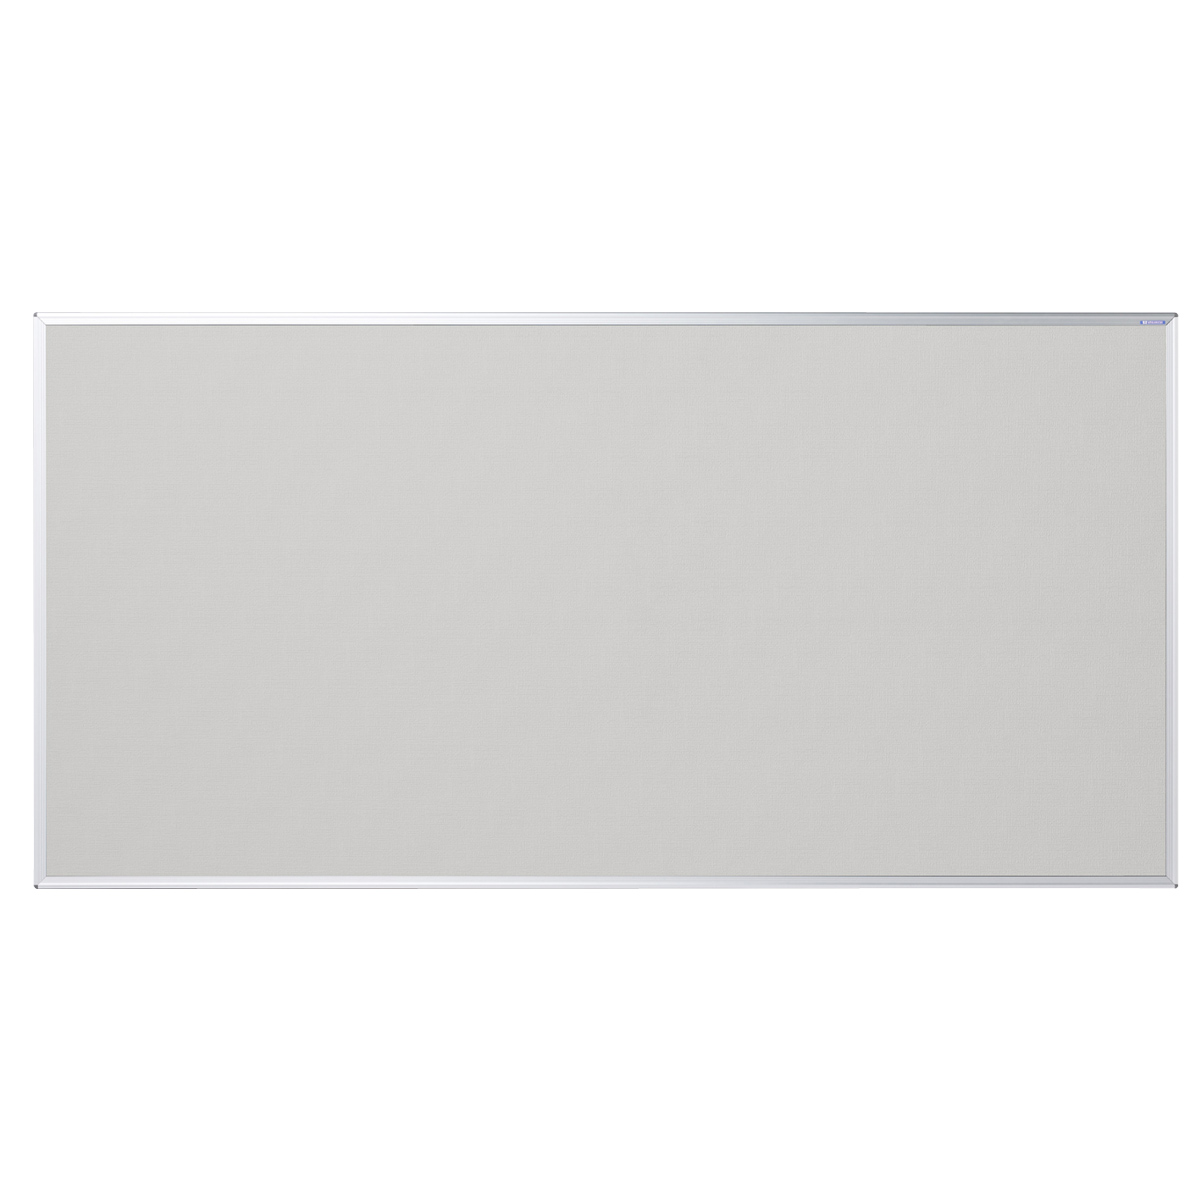 ワンウェイ掲示板 幅1810 高さ910 UJ-K36 通販 ホワイトボード・掲示板 オフィス家具のカグクロ